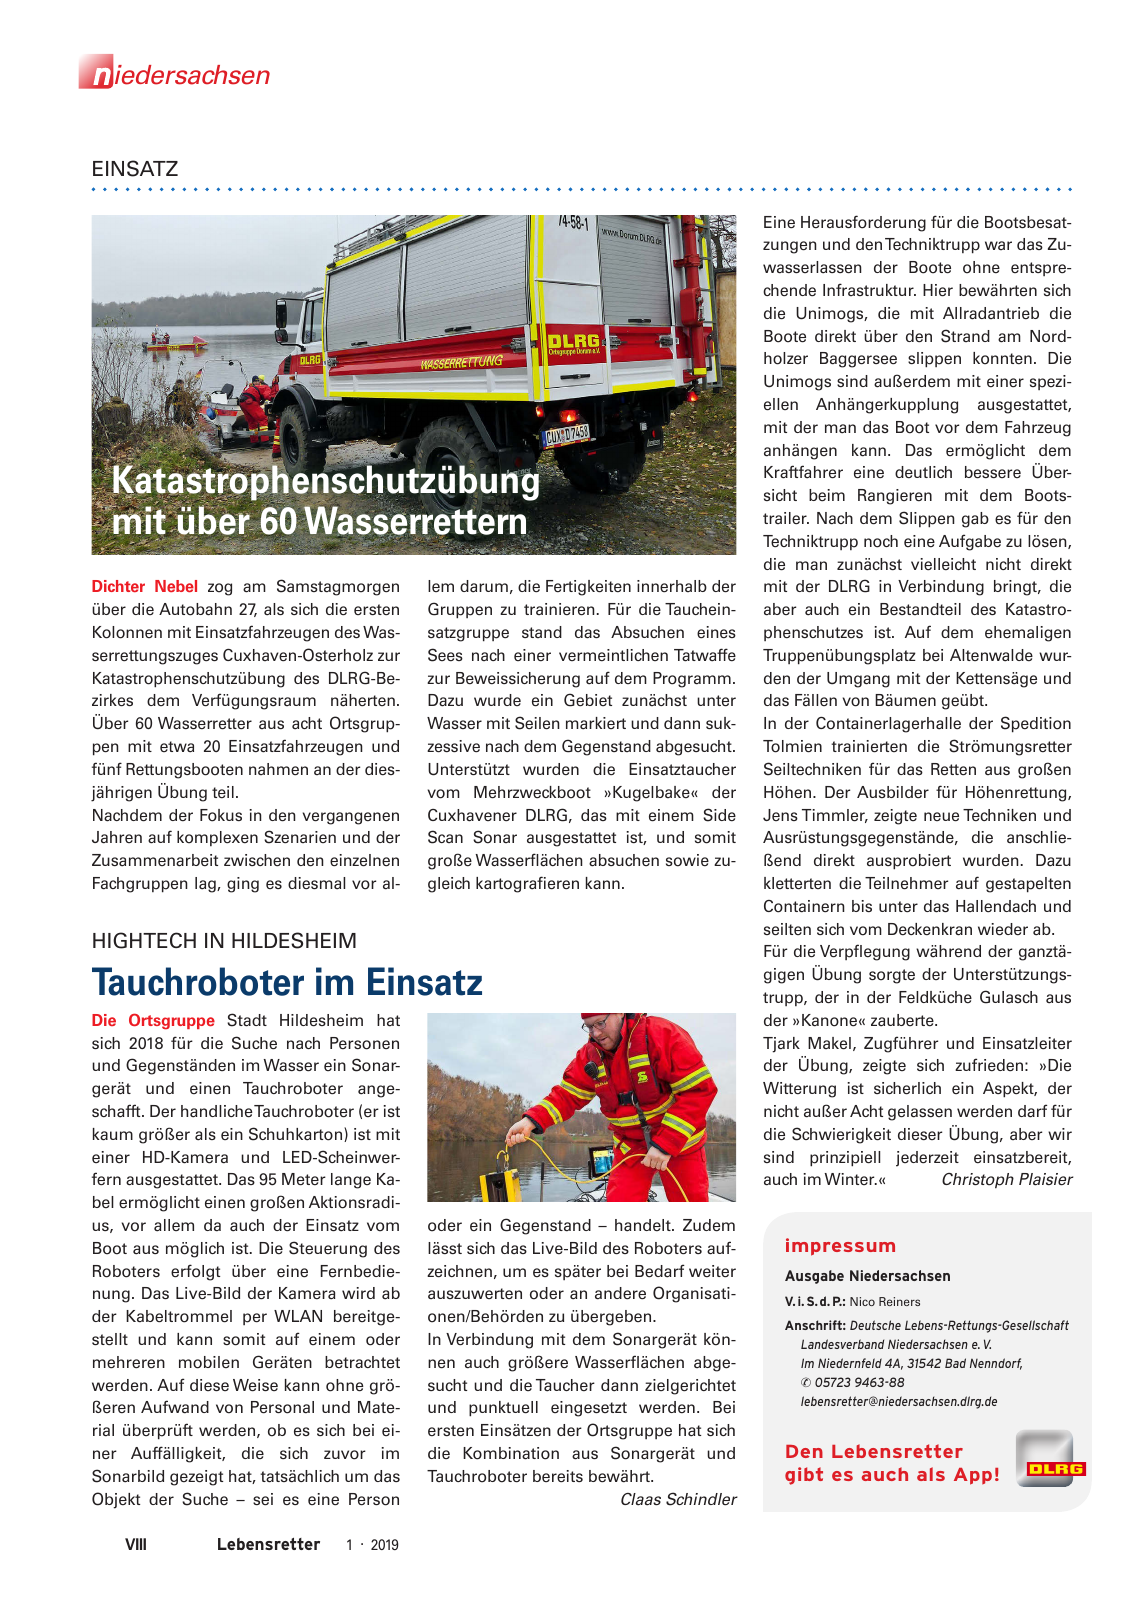 Vorschau Lebensretter 1/2019 –  Regionalausgabe Niedersachsen Seite 10